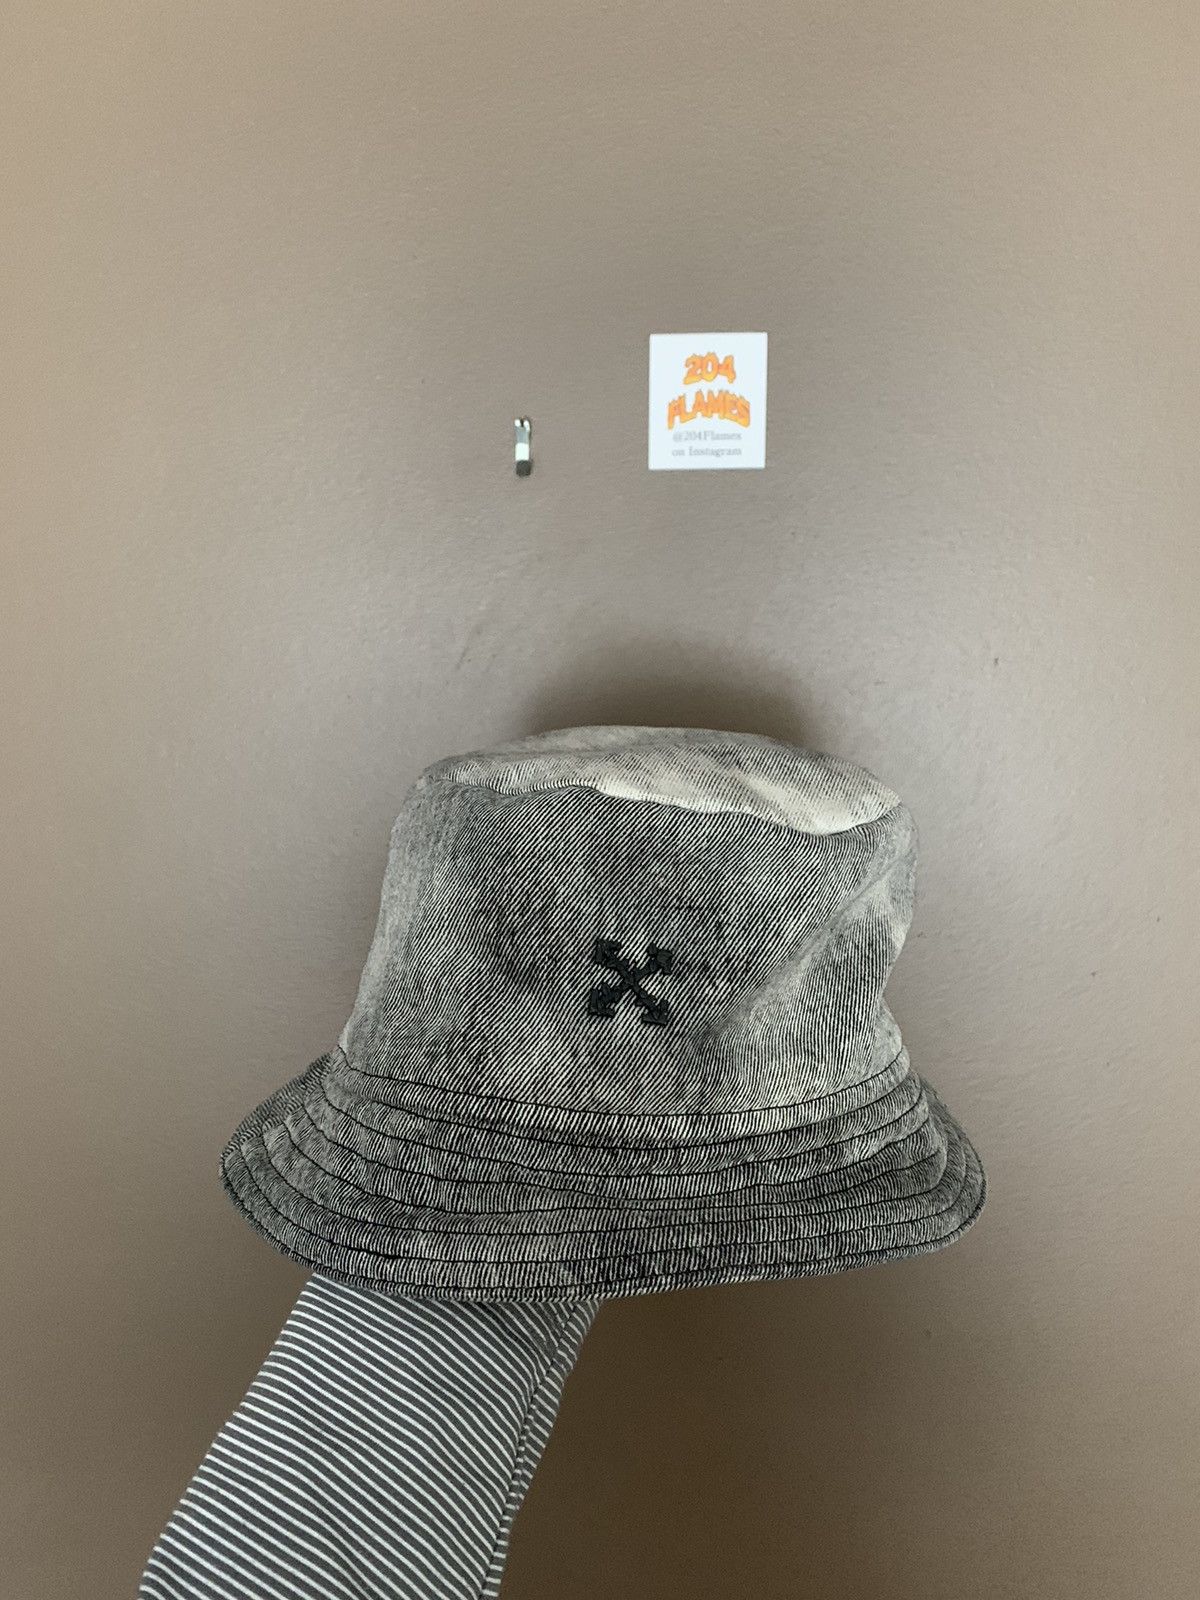 OFF-WHITE Logo-embroidered denim bucket hat